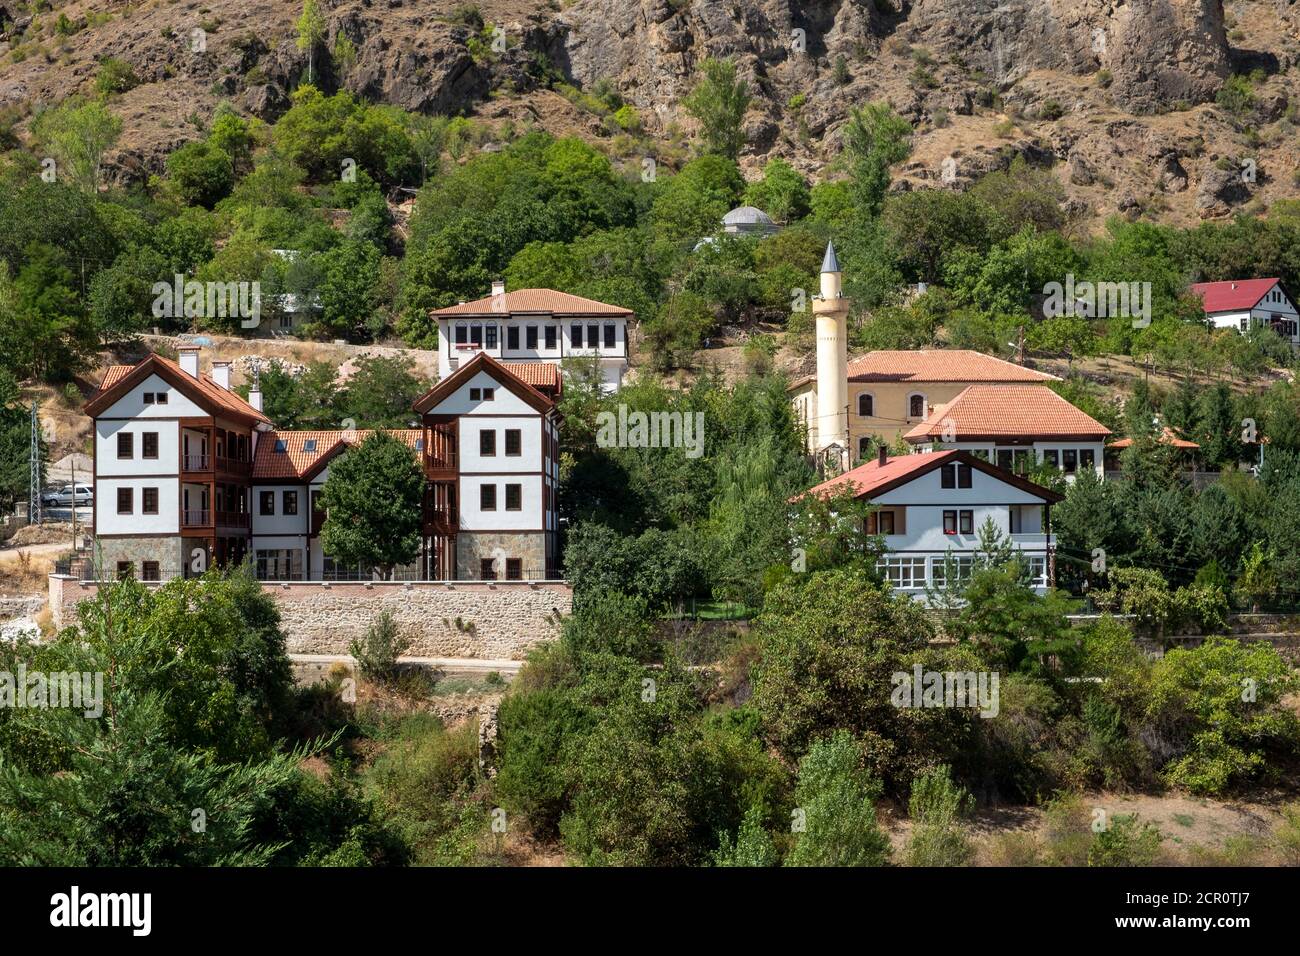 Il y a de nombreux bâtiments historiques appartenant à différentes cultures dans le Süleymaniye mahallesi, également connu sous le nom de l'ancien Gümüşhane. Banque D'Images